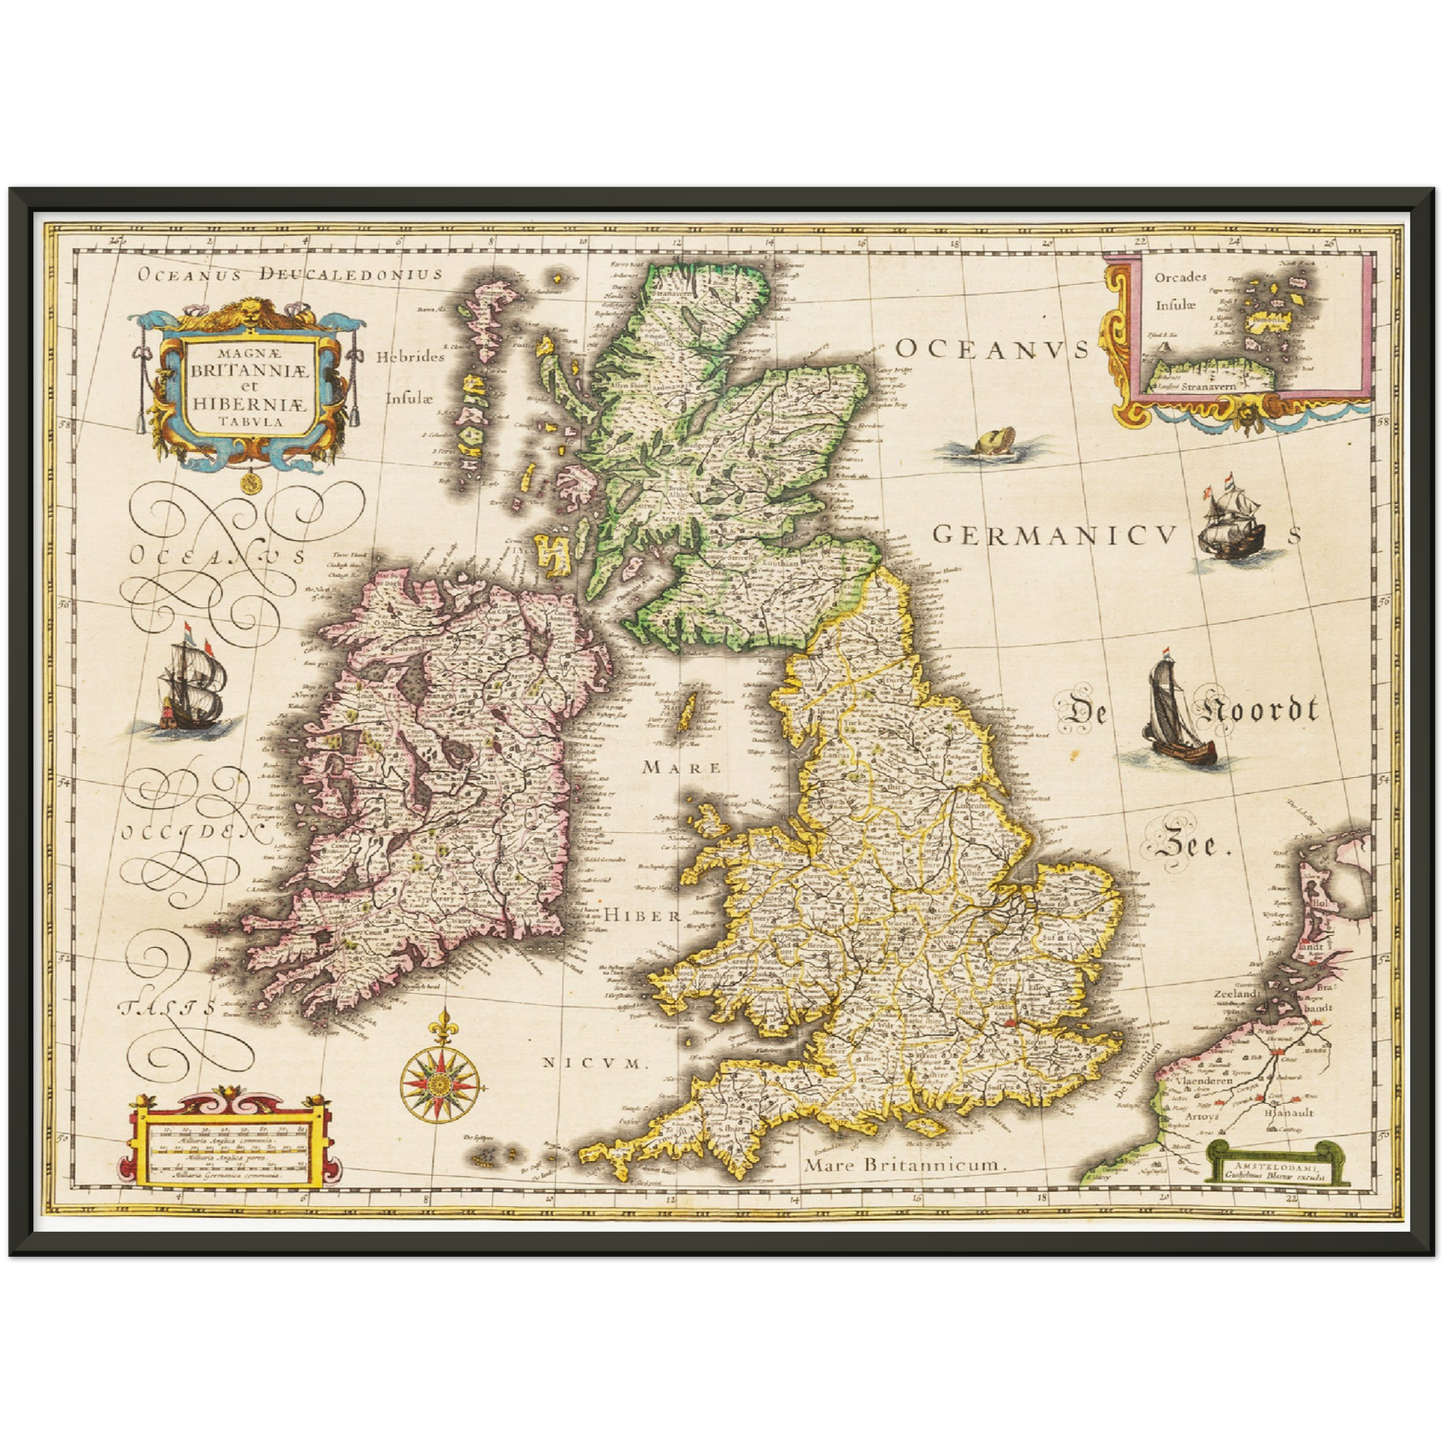 Historische Landkarte Vereinigtes Königreich um 1635